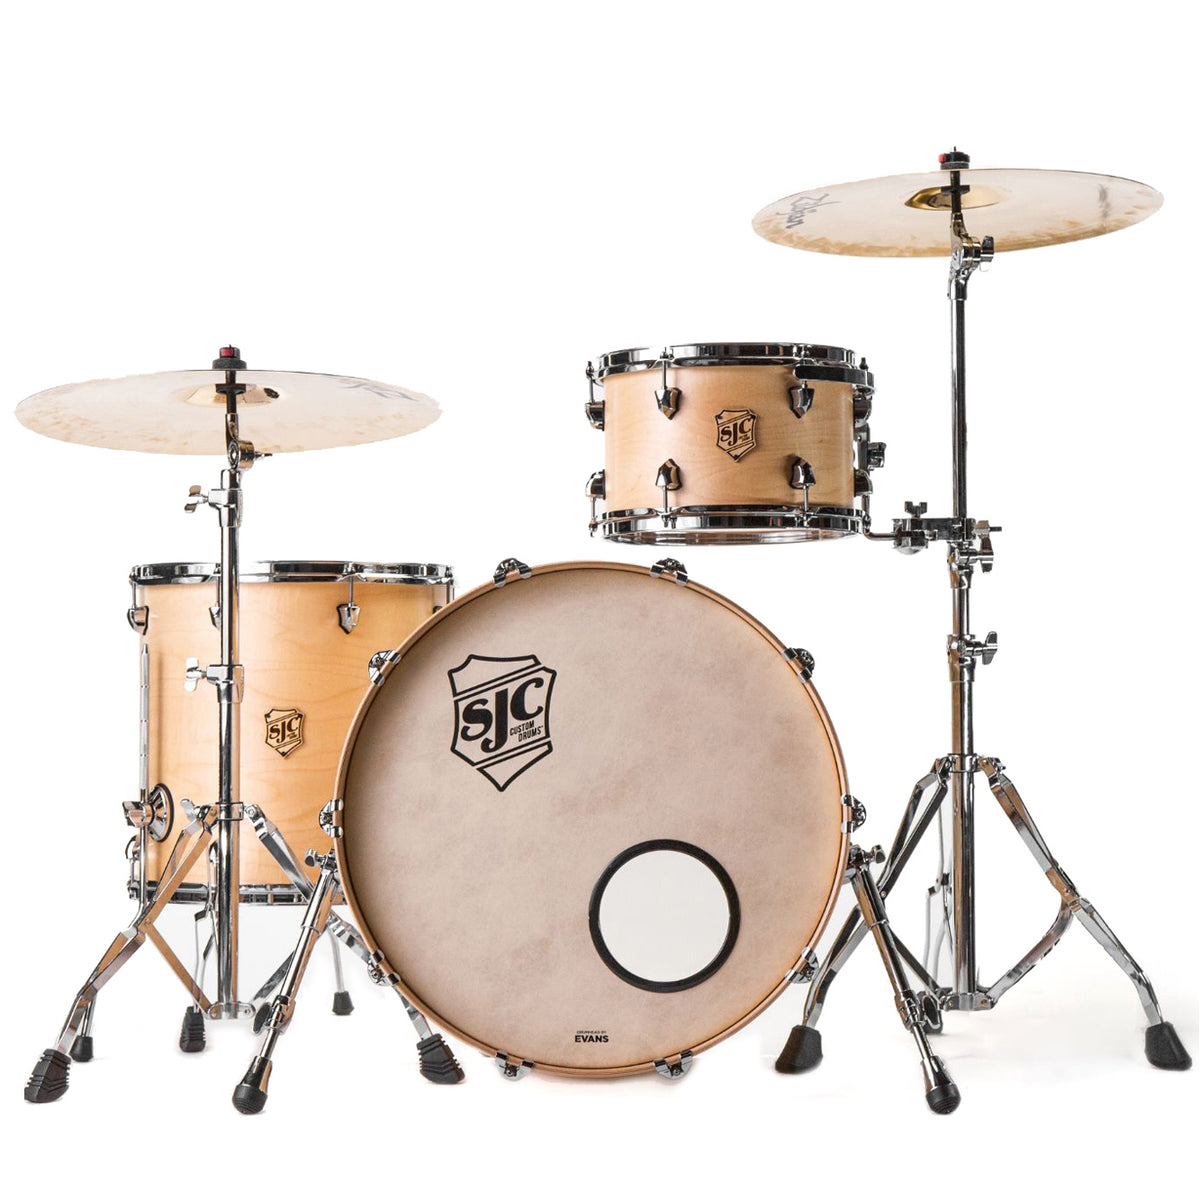 SJC Custom Drums Tour Series